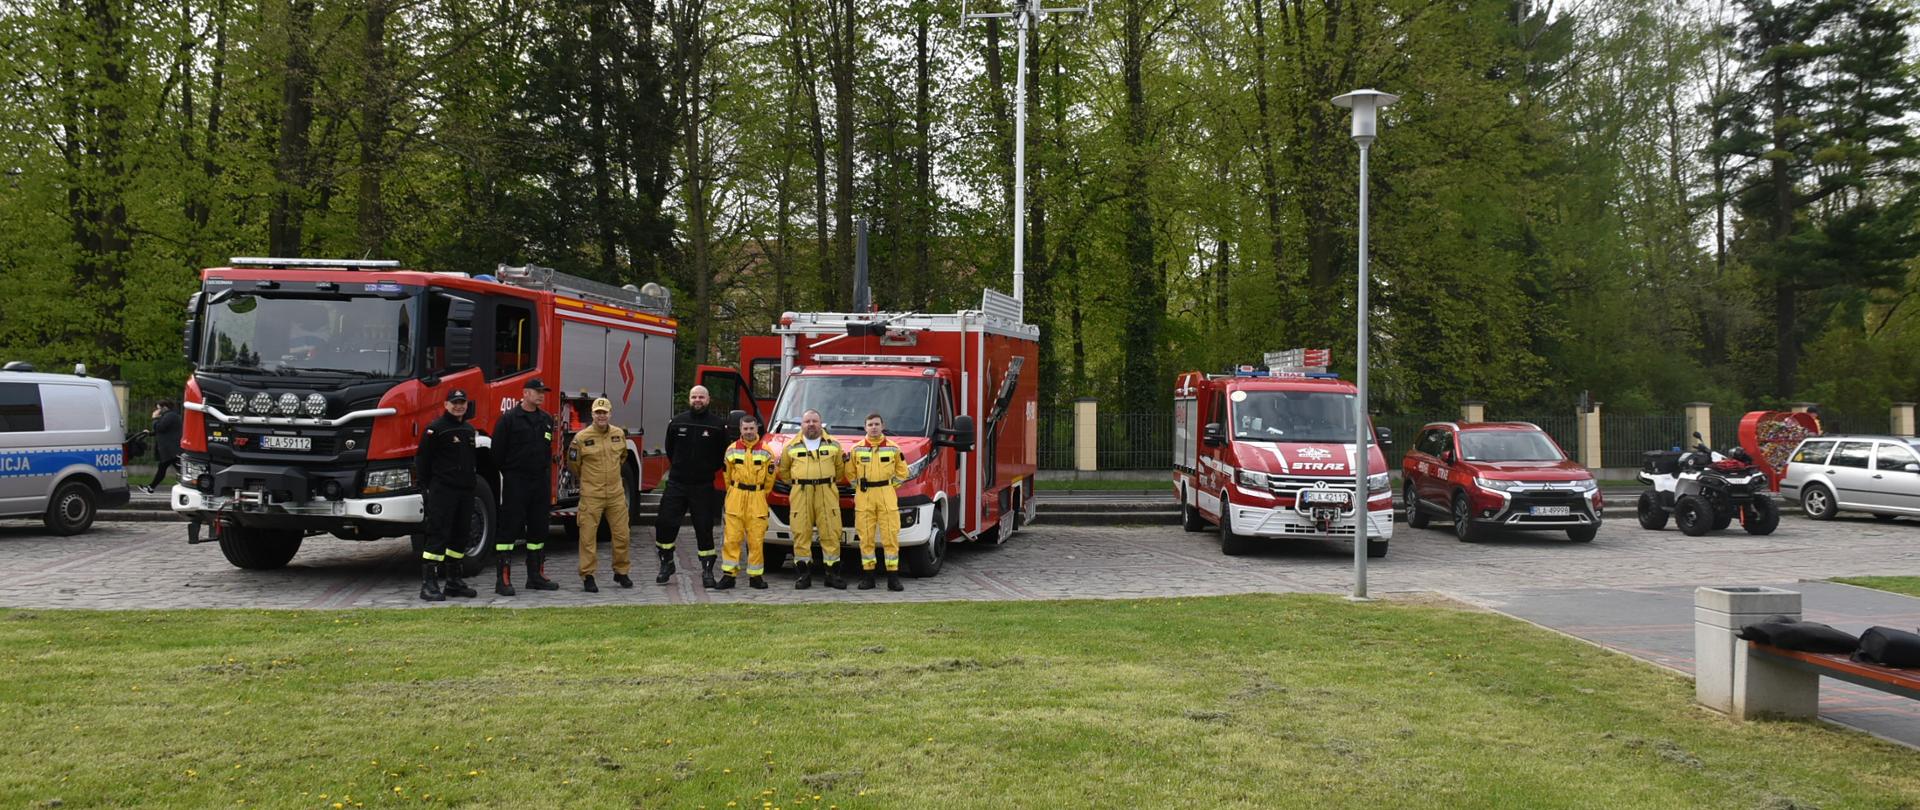 Zdjęcie przedstawia plac przed miejskim domem kultury na którym ustawione są pojazdy komendy powiatowej państwowej straży pożarnej w Łańcucie oraz ochotniczej straży pożarnej w Husowie przed którymi stoją strażacy tych jednostek. W tle park w Łańcucie.